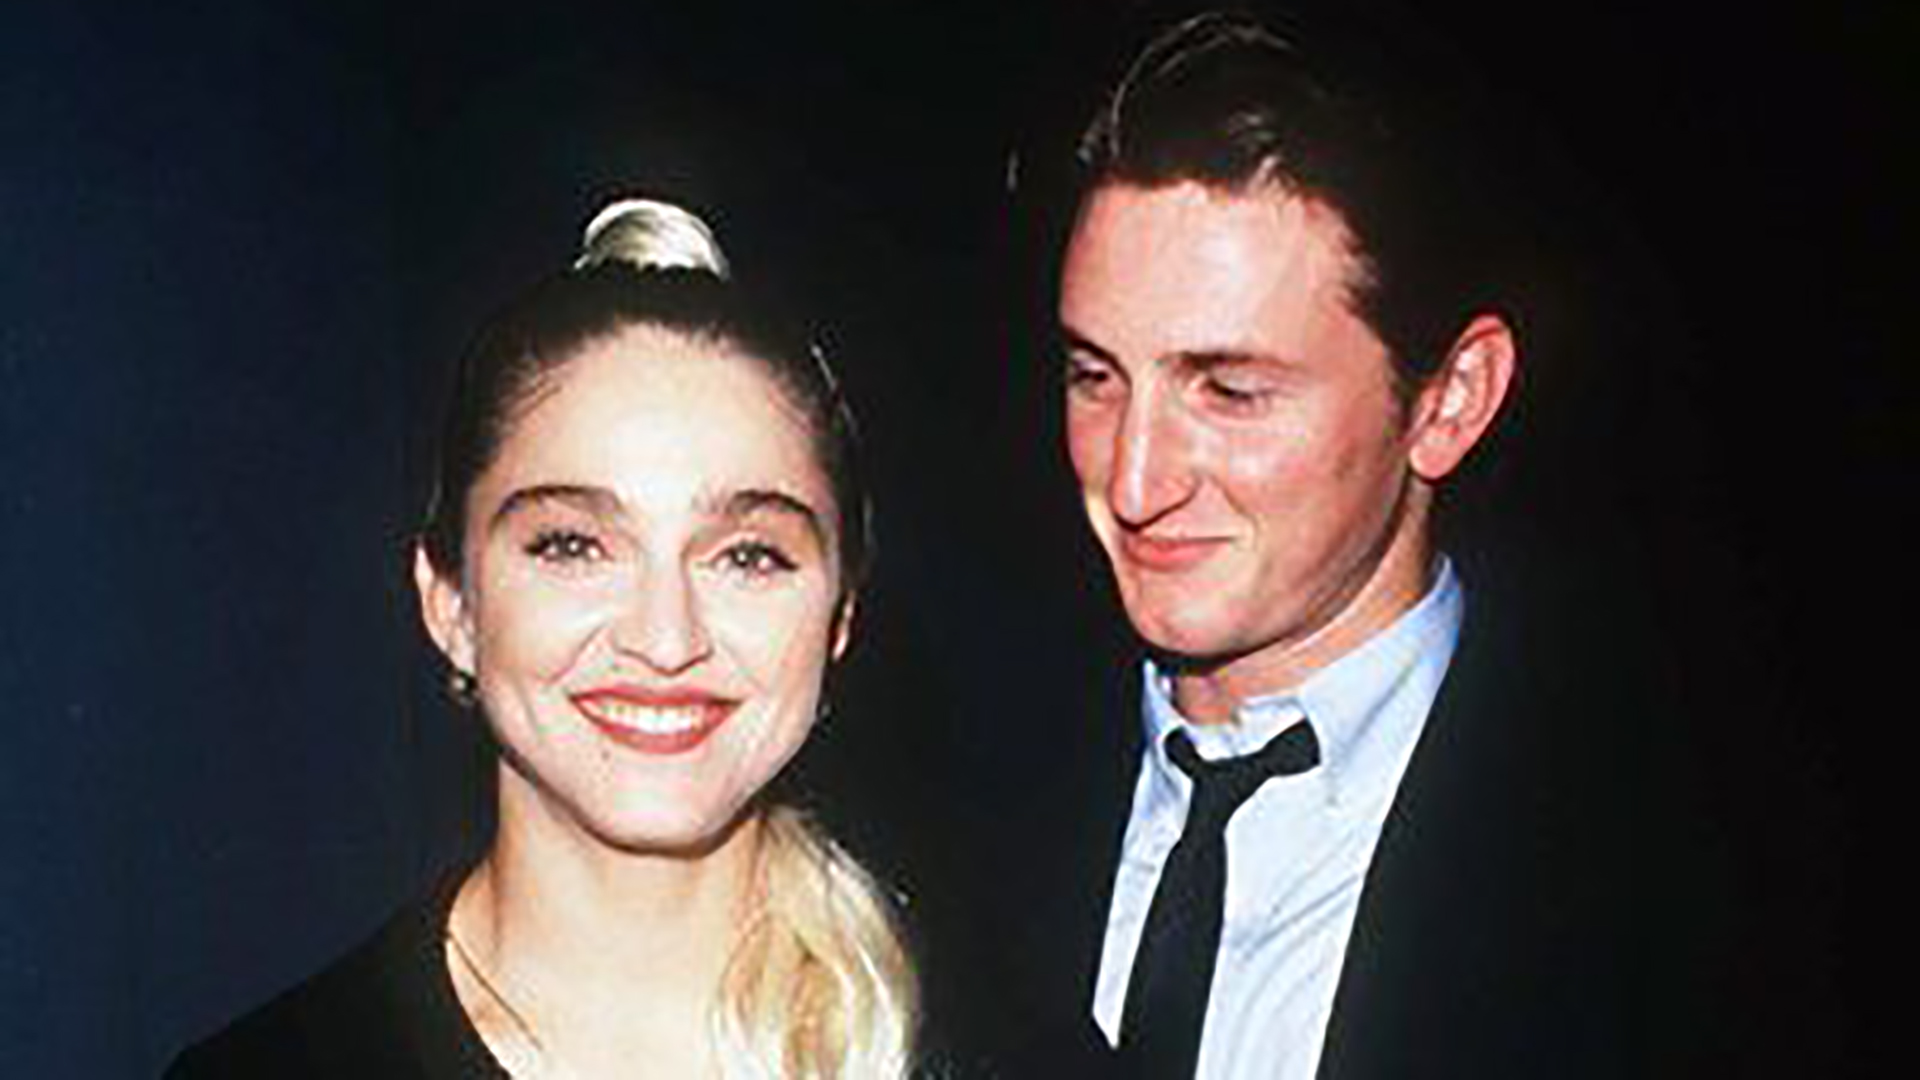 Se conocieron en un alto del rodaje de Material Girl, fue amor a primera vista. Madonna y Sean Penn tuvieron su primera cita el13 de febrero de 1985, fue el comienzo de una relación tormentosa (Dave Lewis/Shutterstock)